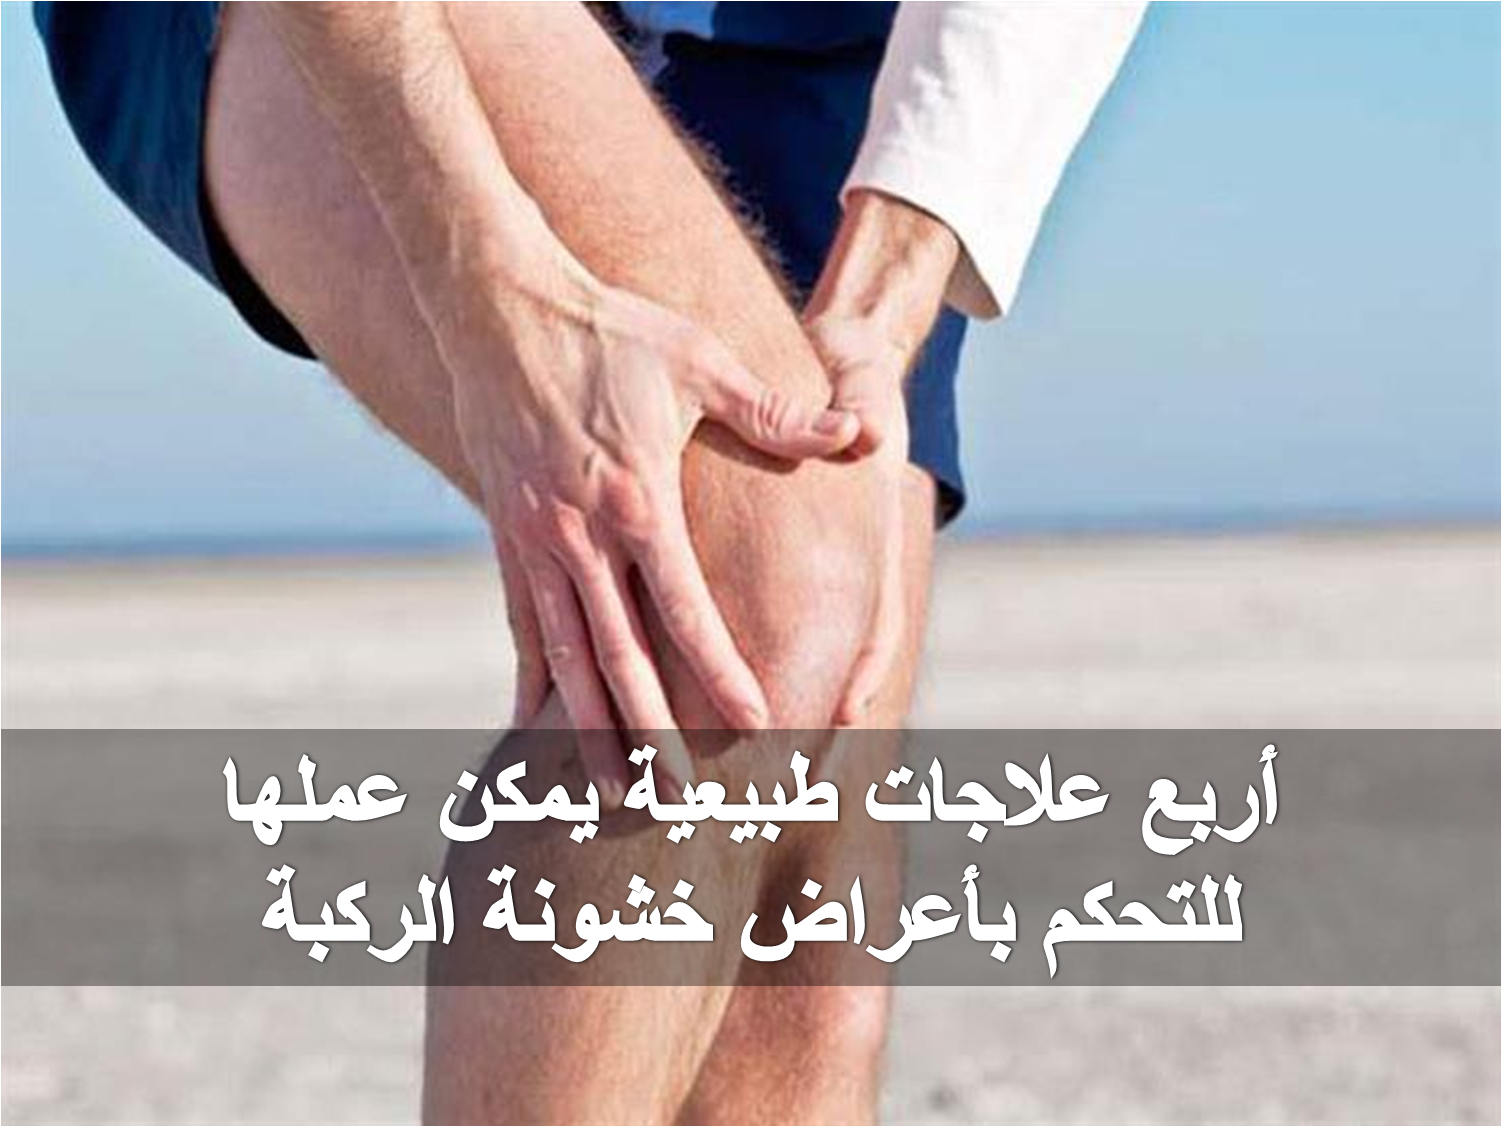 أربع علاجات طبيعية يمكن عملها للتحكم بأعراض خشونة الركبة